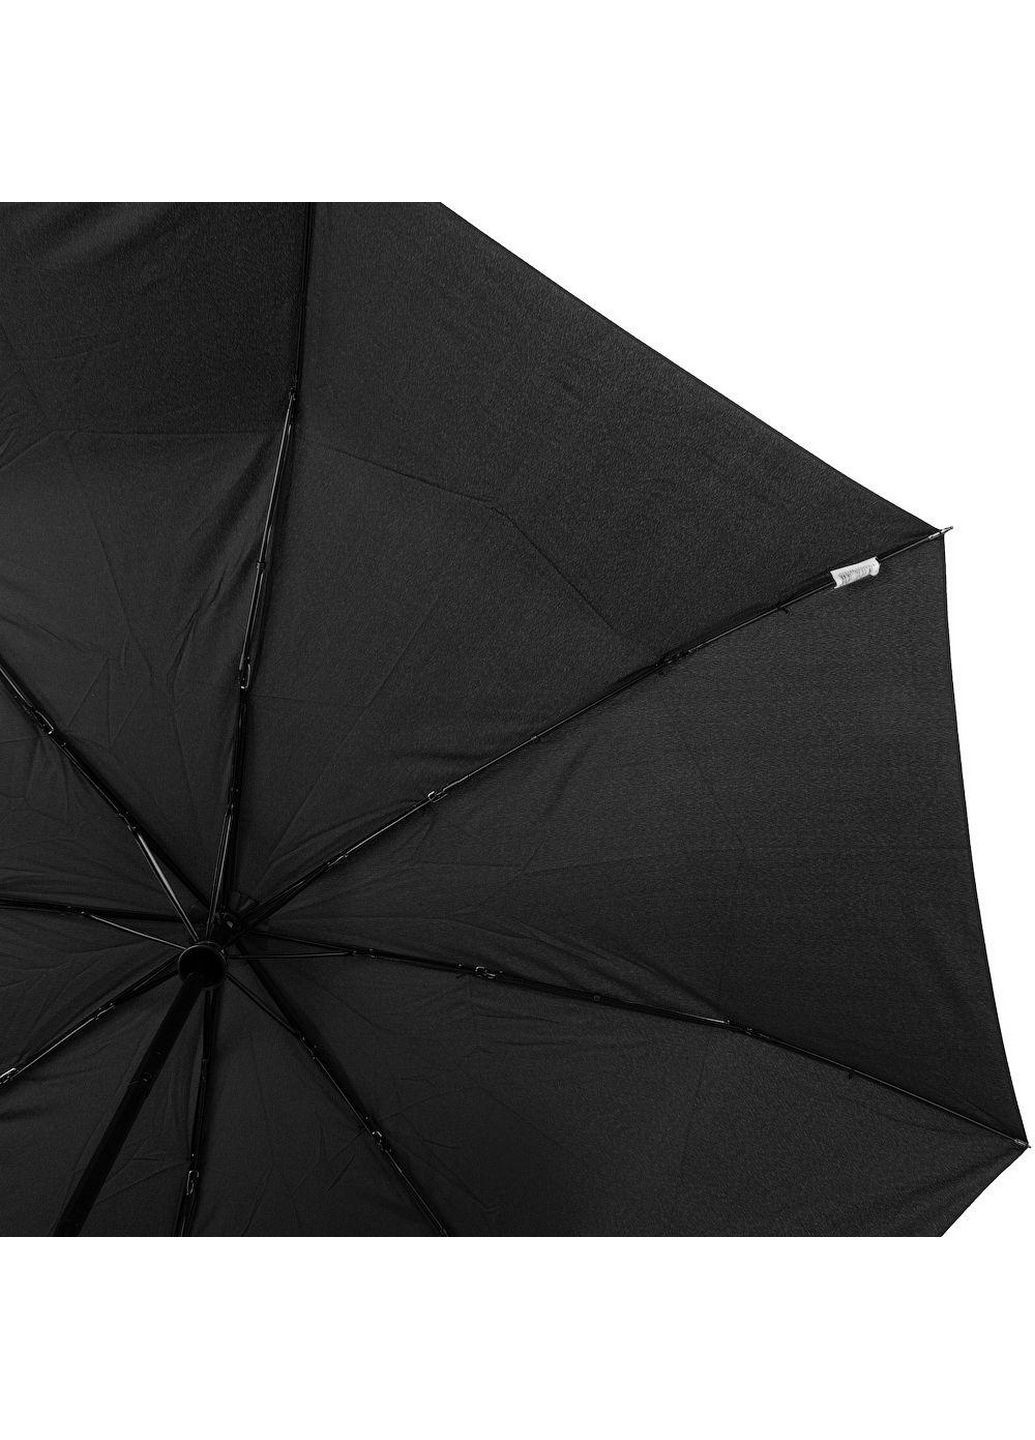 Чоловіча складна парасолька автоматична Lamberti (288135457)